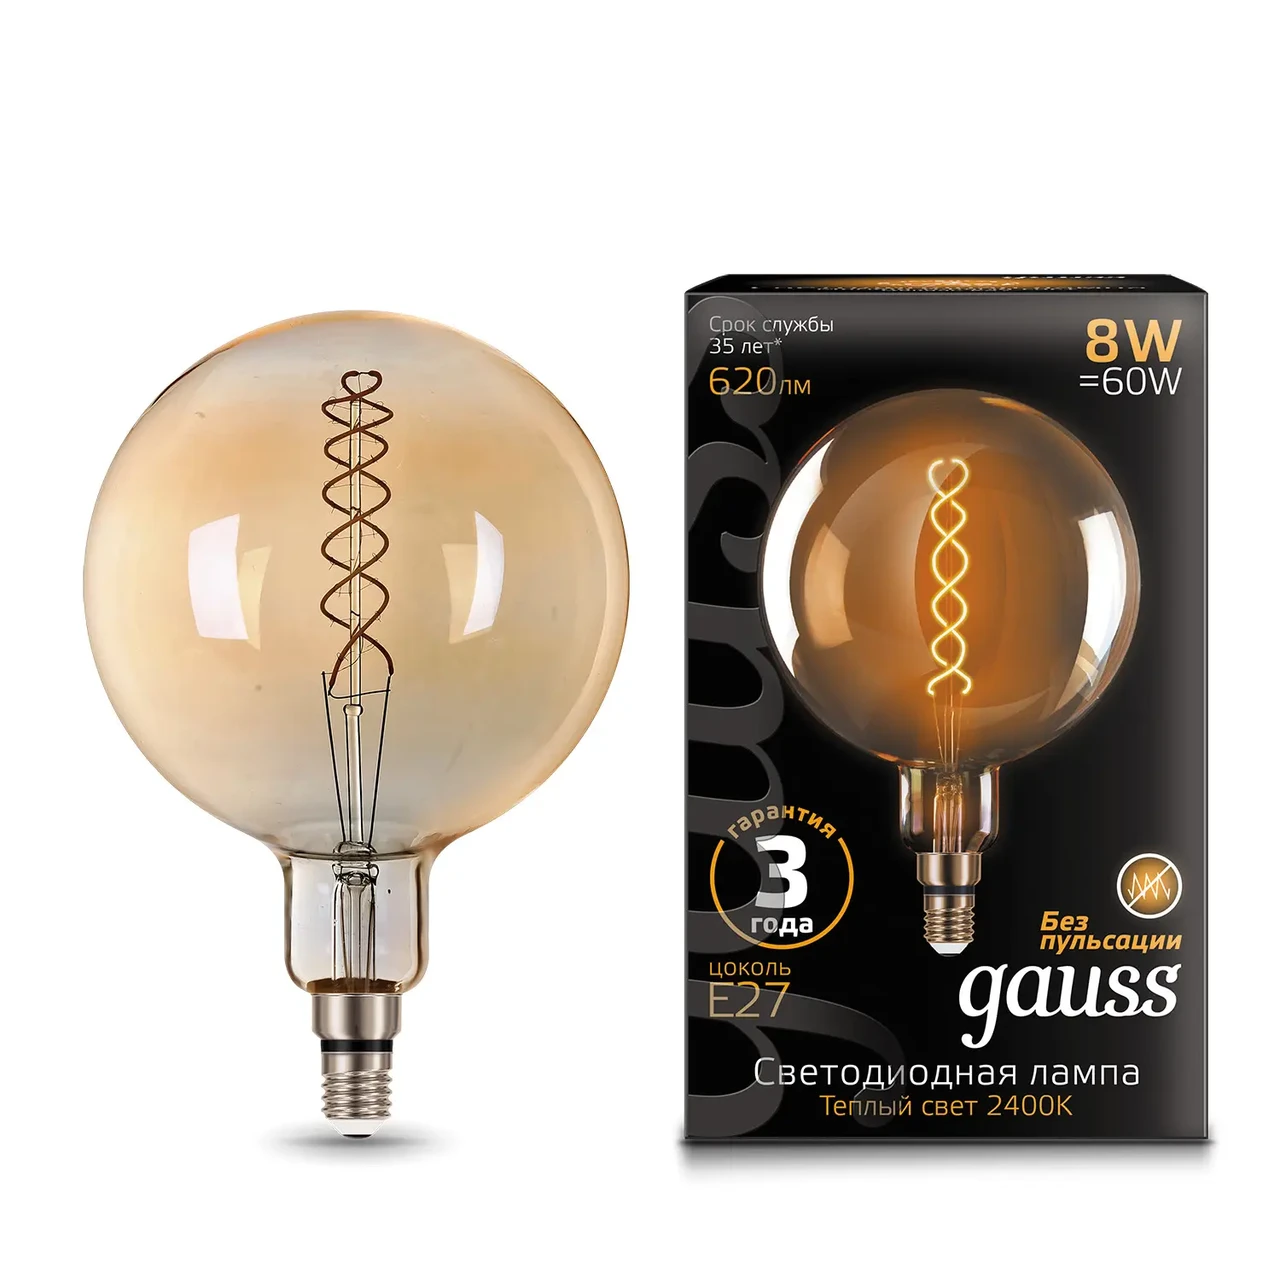 Лампа Gauss Filament G200 8W 620lm 2400К Е27 golden flexible LED 1/6, фото 1